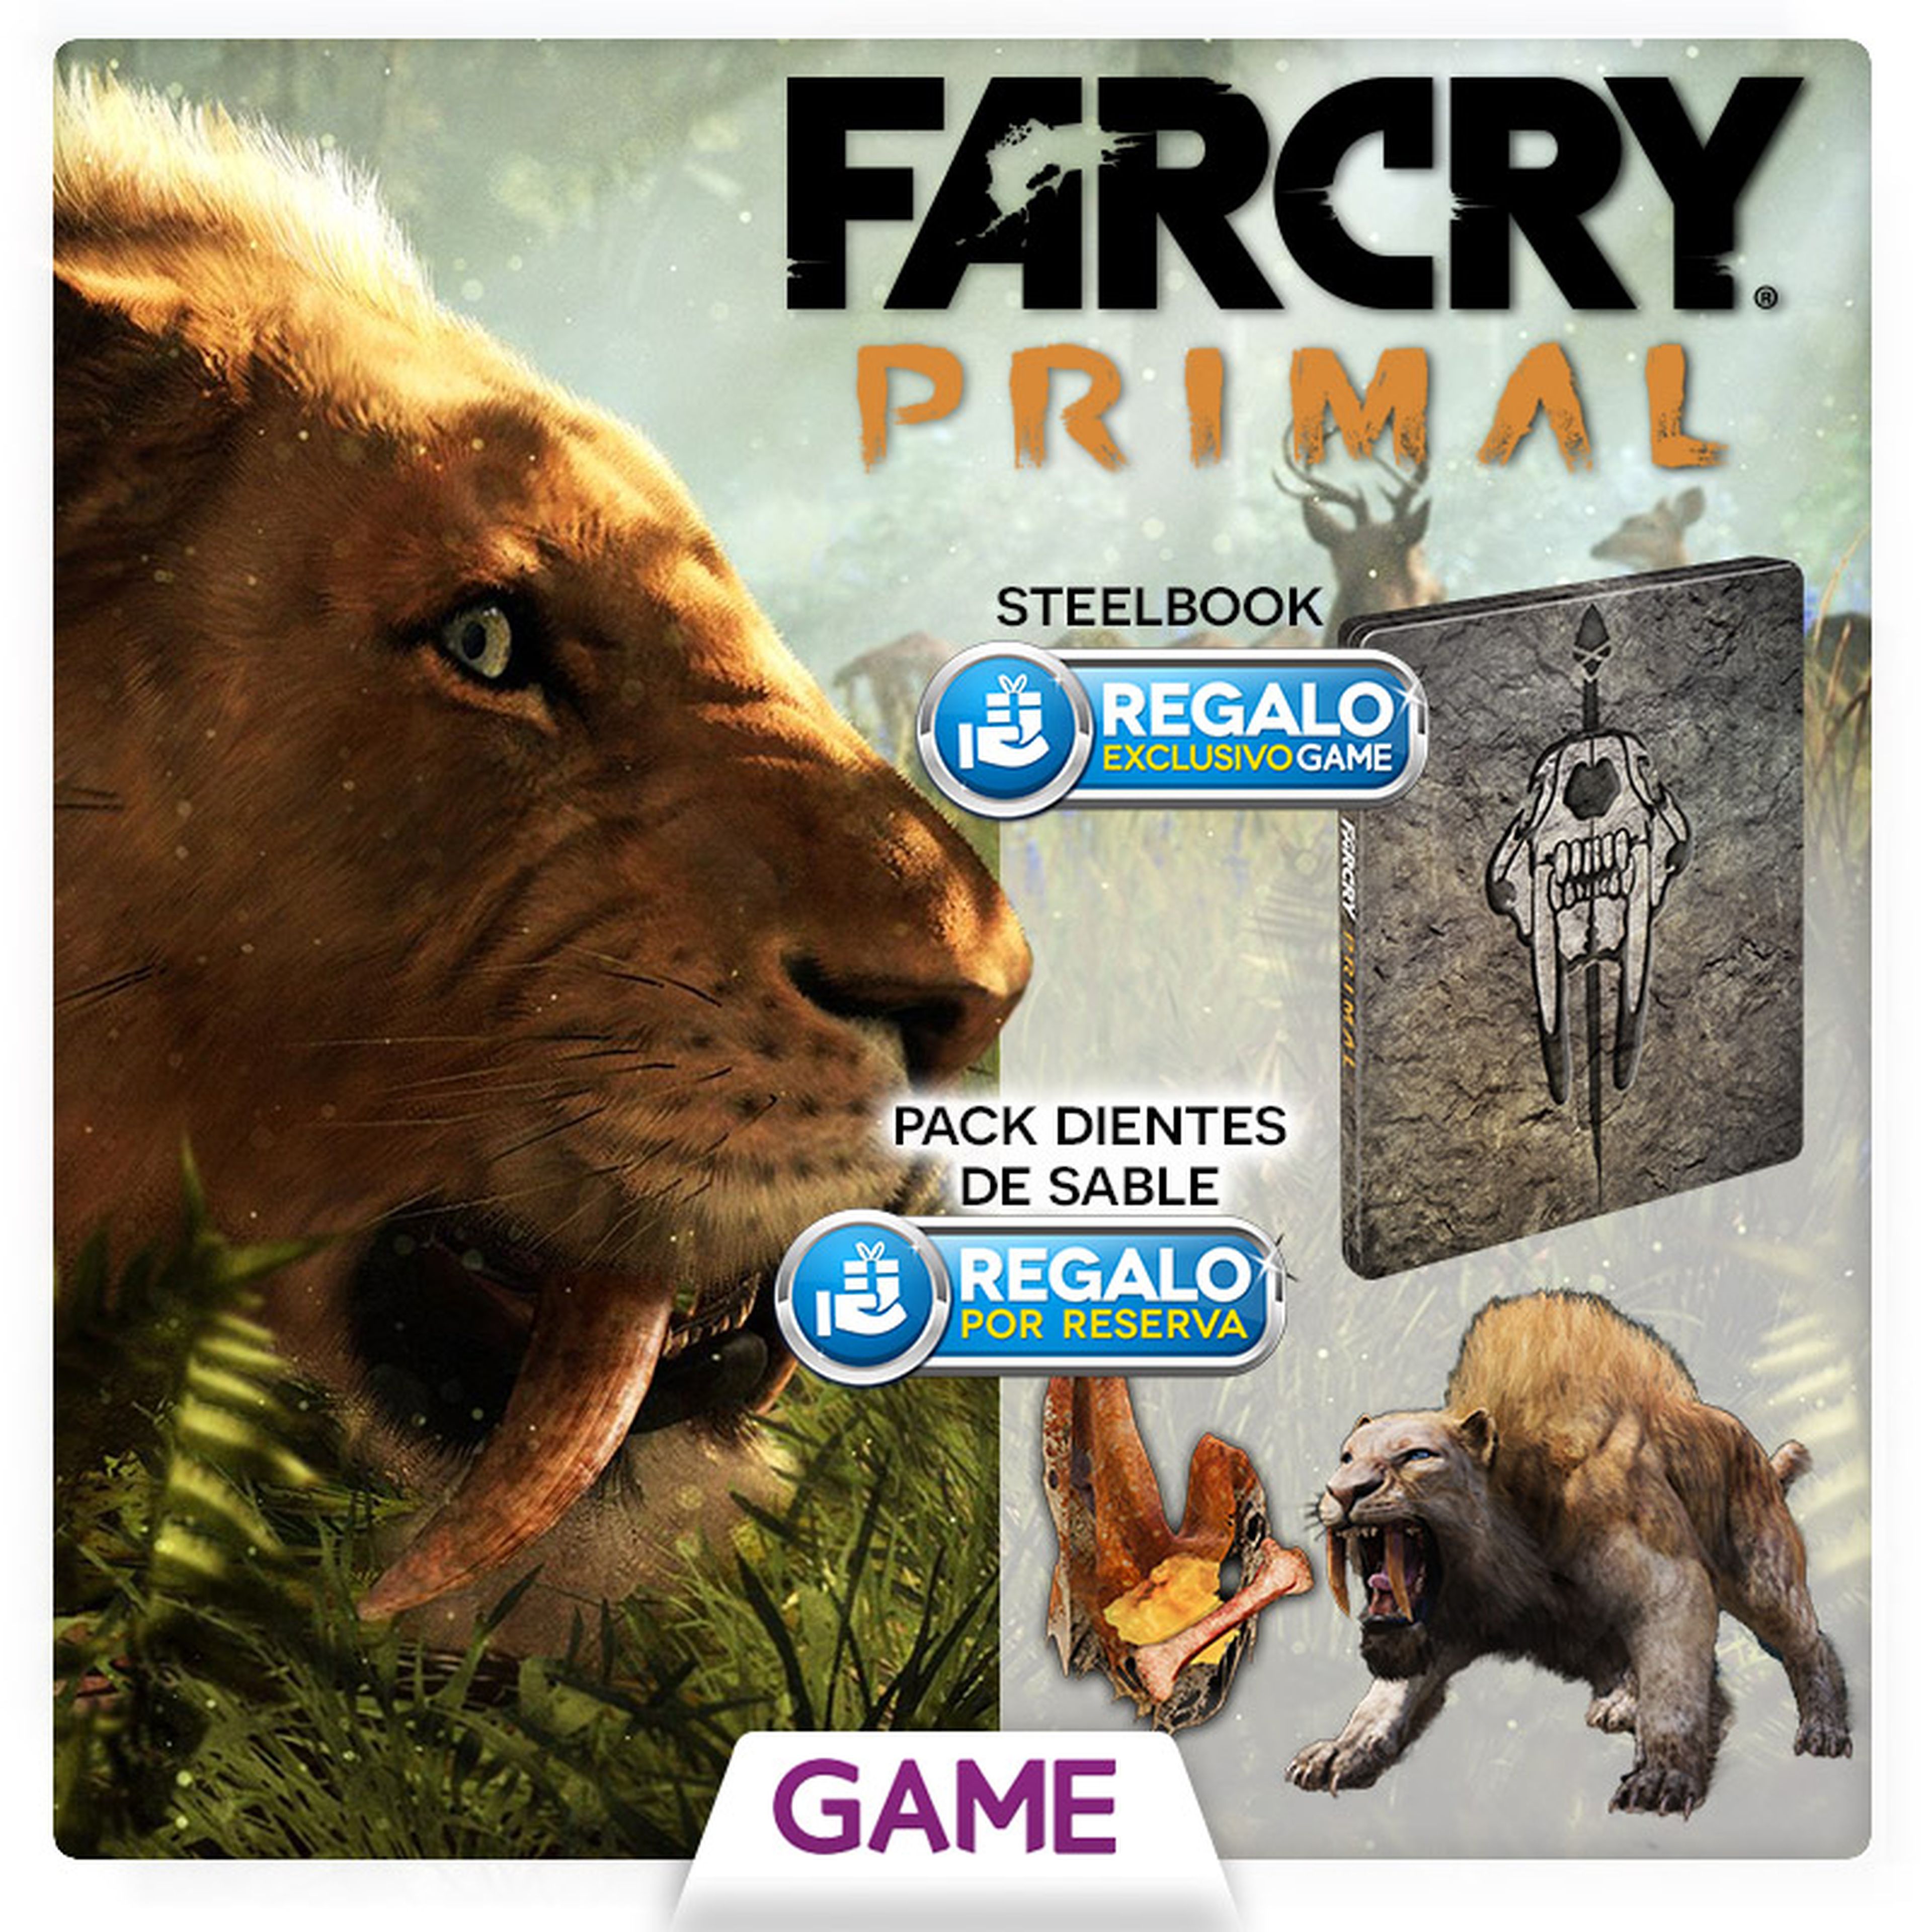 Far Cry Primal vendrá con una steelbook exclusiva al reservarlo en GAME